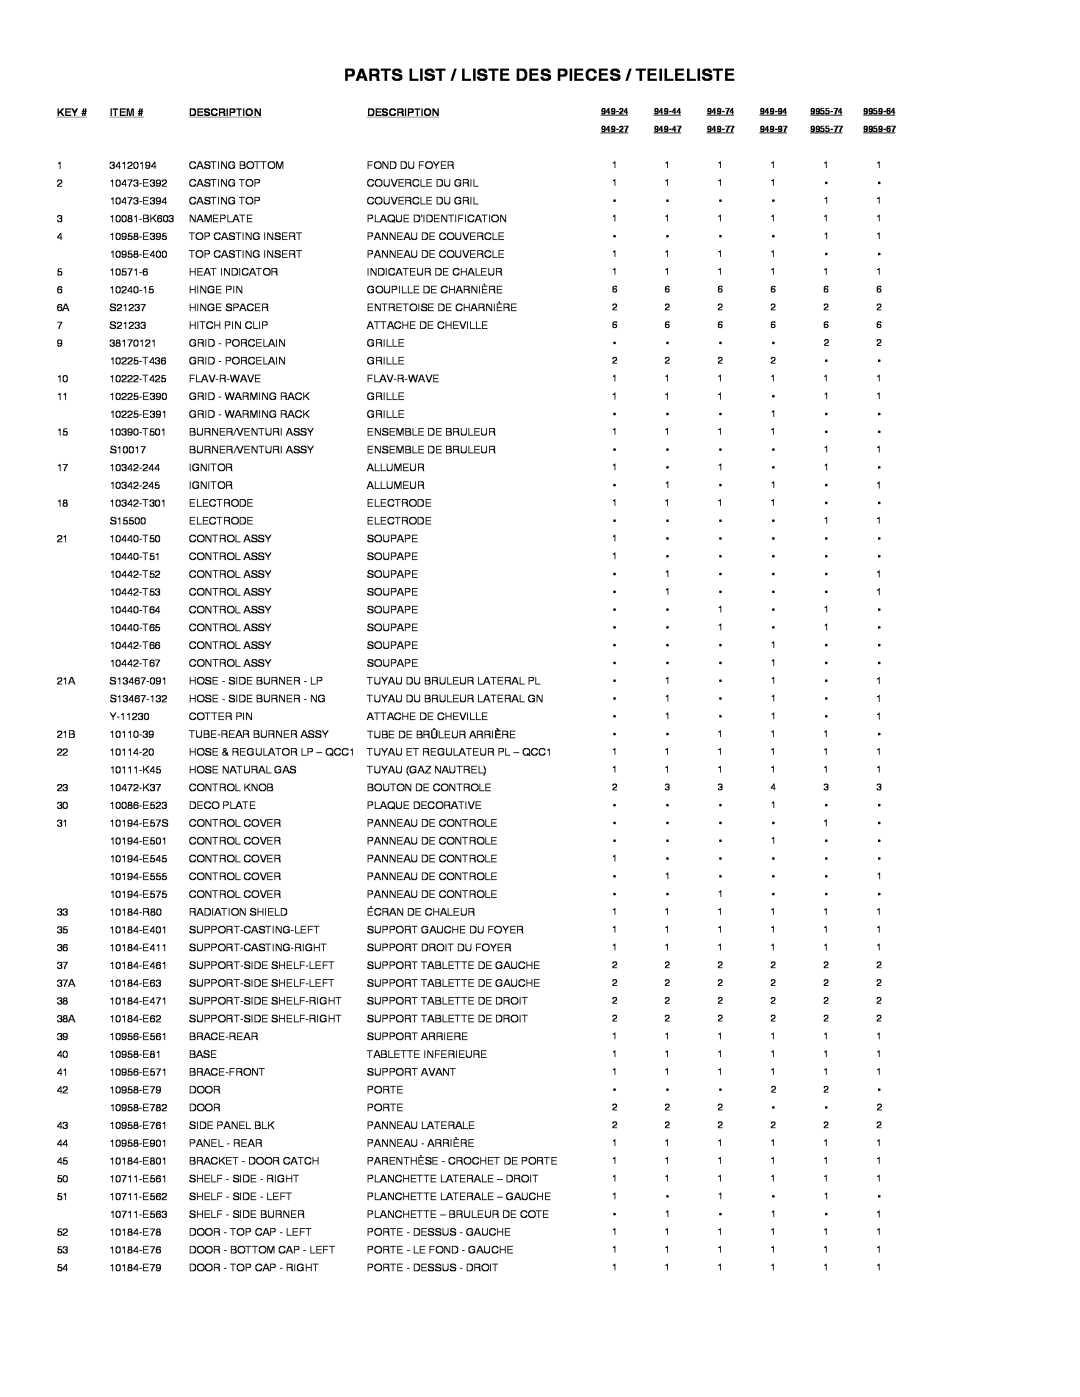 Broil King 949-24 manual Parts List / Liste Des Pieces / Teileliste, Key #, Item #, Description 